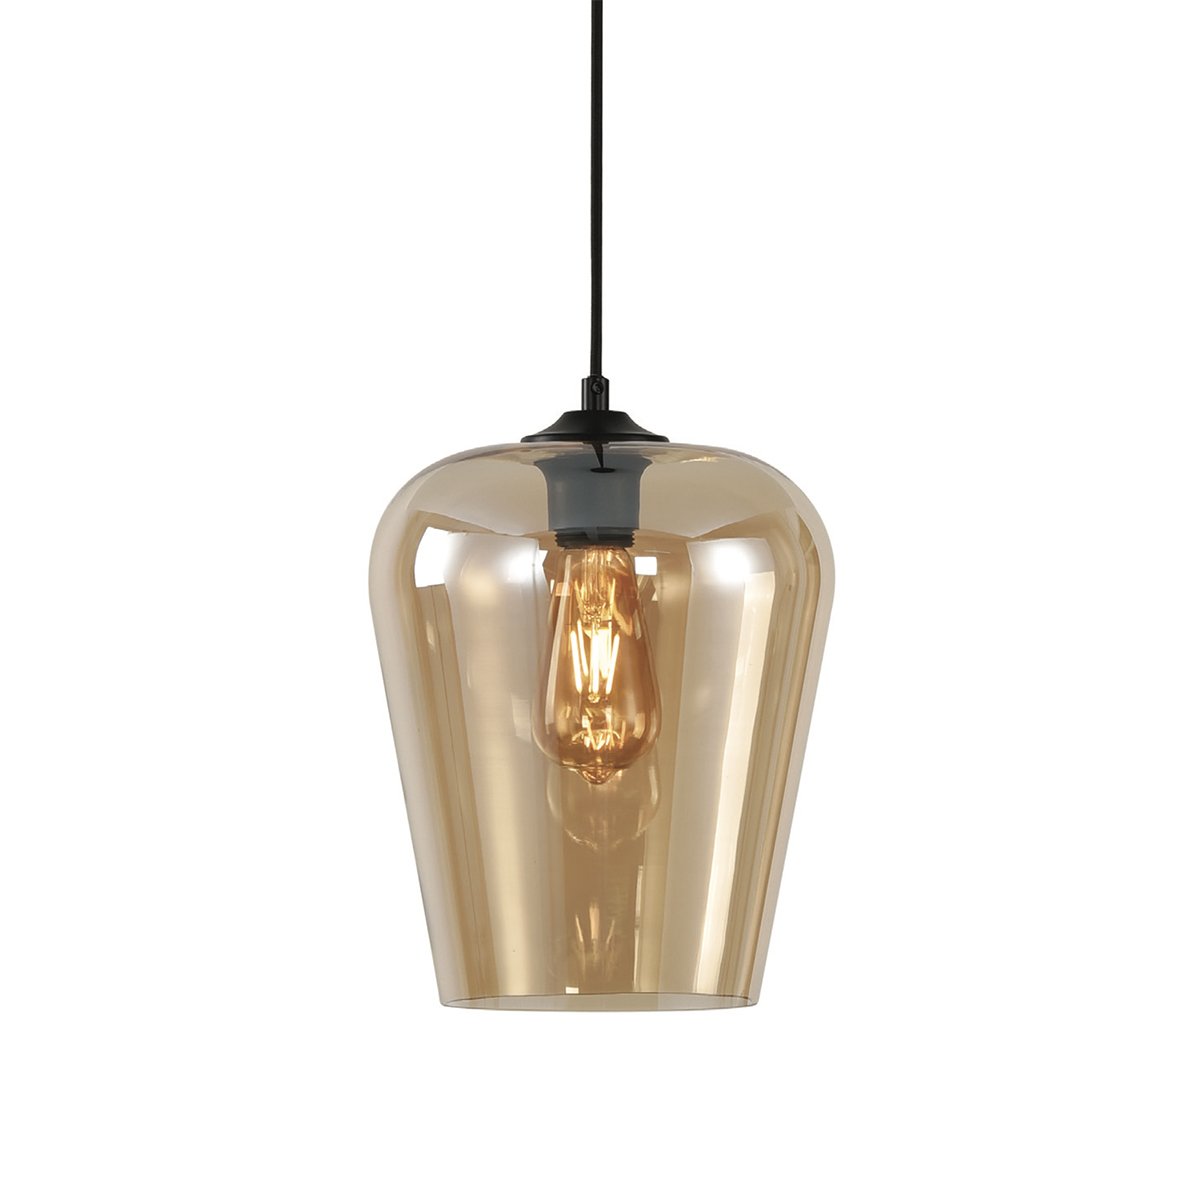 Binnenverlichting Hanglamp design goud glas Alghero - Ø 23 cm